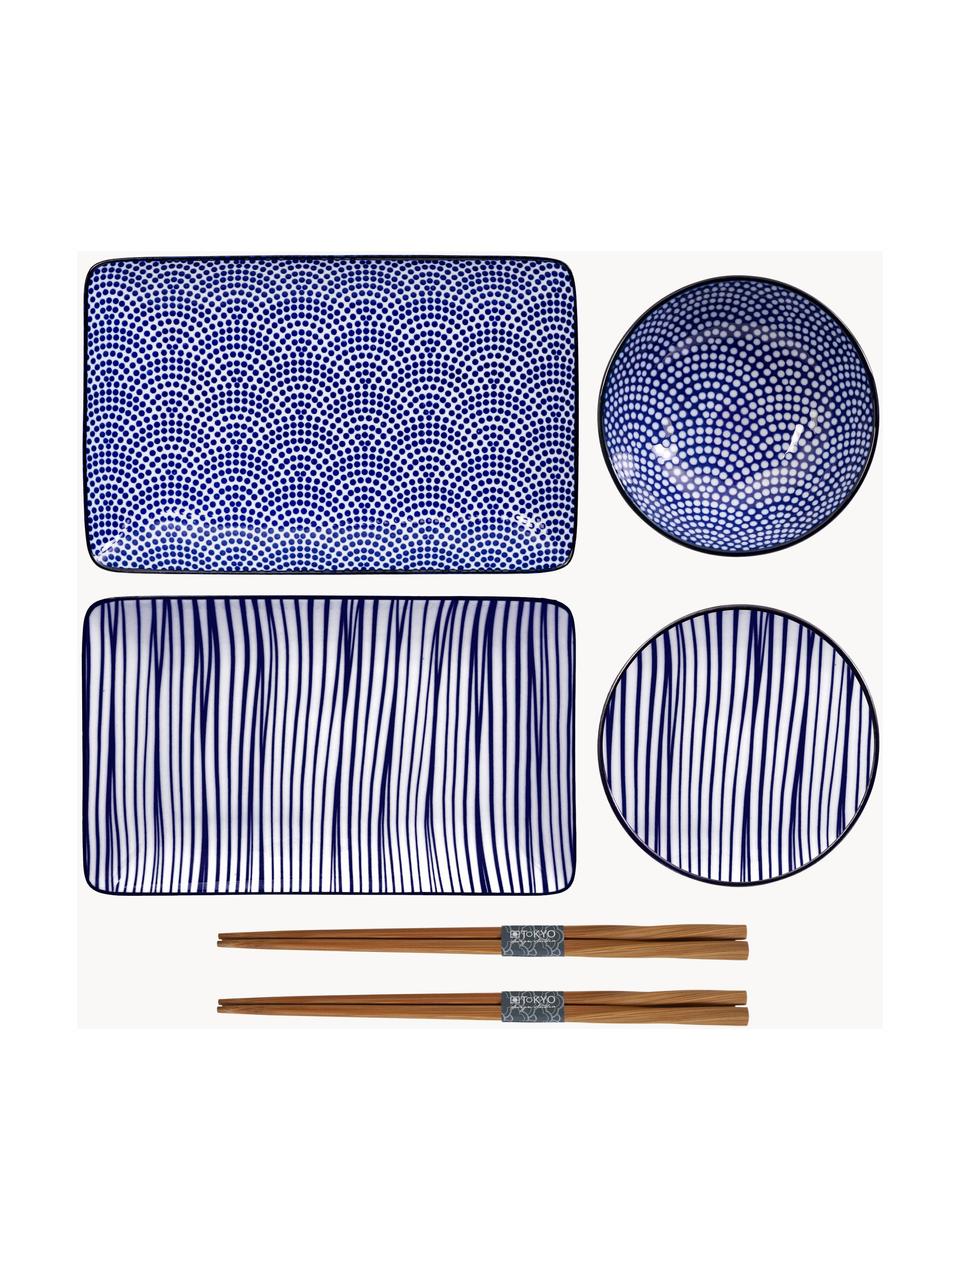 Handgemaakte porseleinen serviesset Nippon met eetstokjes, 2 personen (6-delig), Blauw, wit, donker hout, Set met verschillende groottes